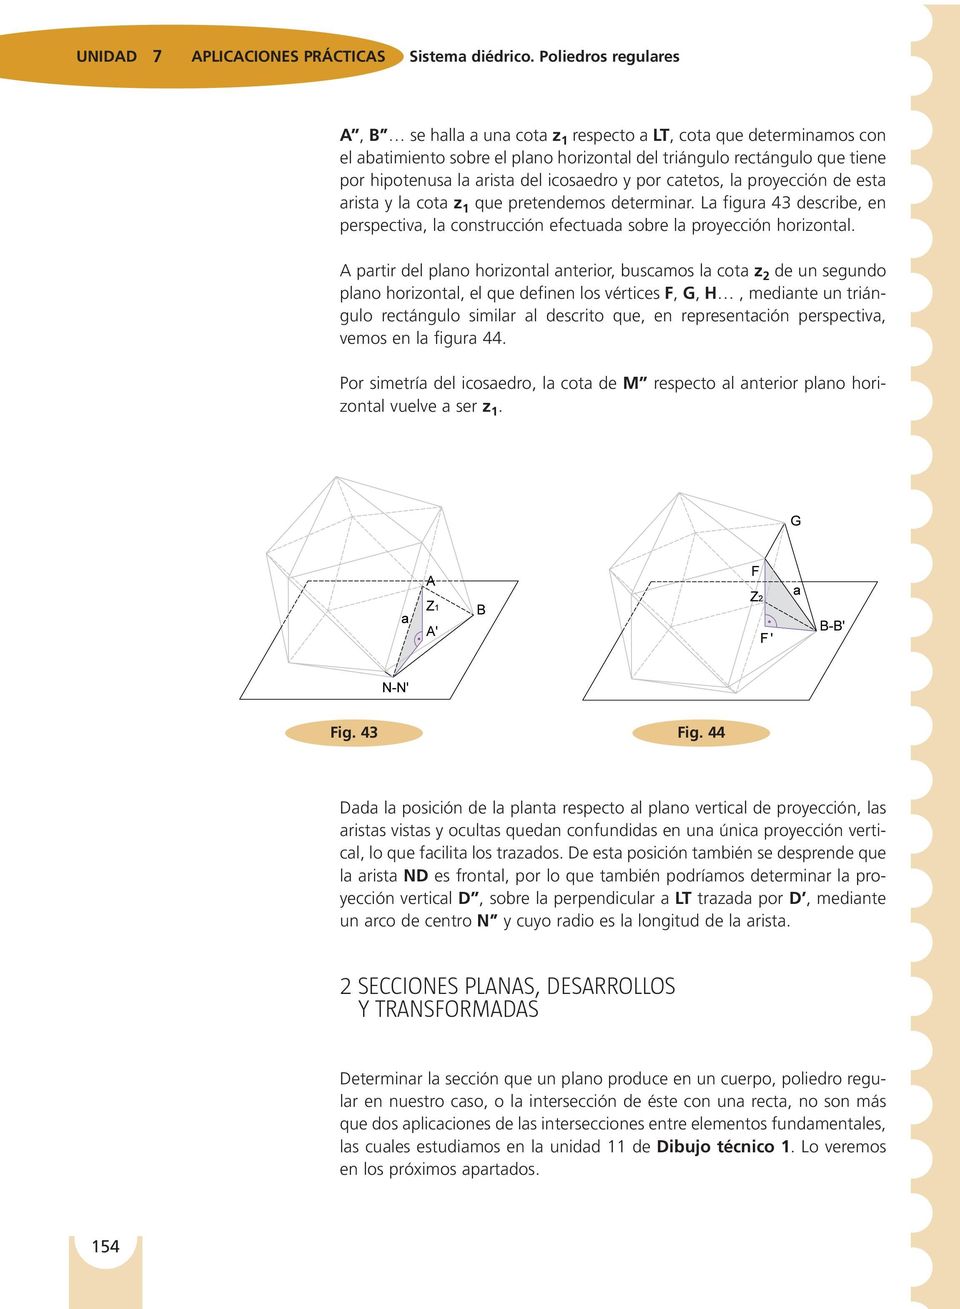 icosaedro y por catetos, la proyección de esta arista y la cota z 1 que pretendemos determinar. La figura 43 describe, en perspectiva, la construcción efectuada sobre la proyección horizontal.